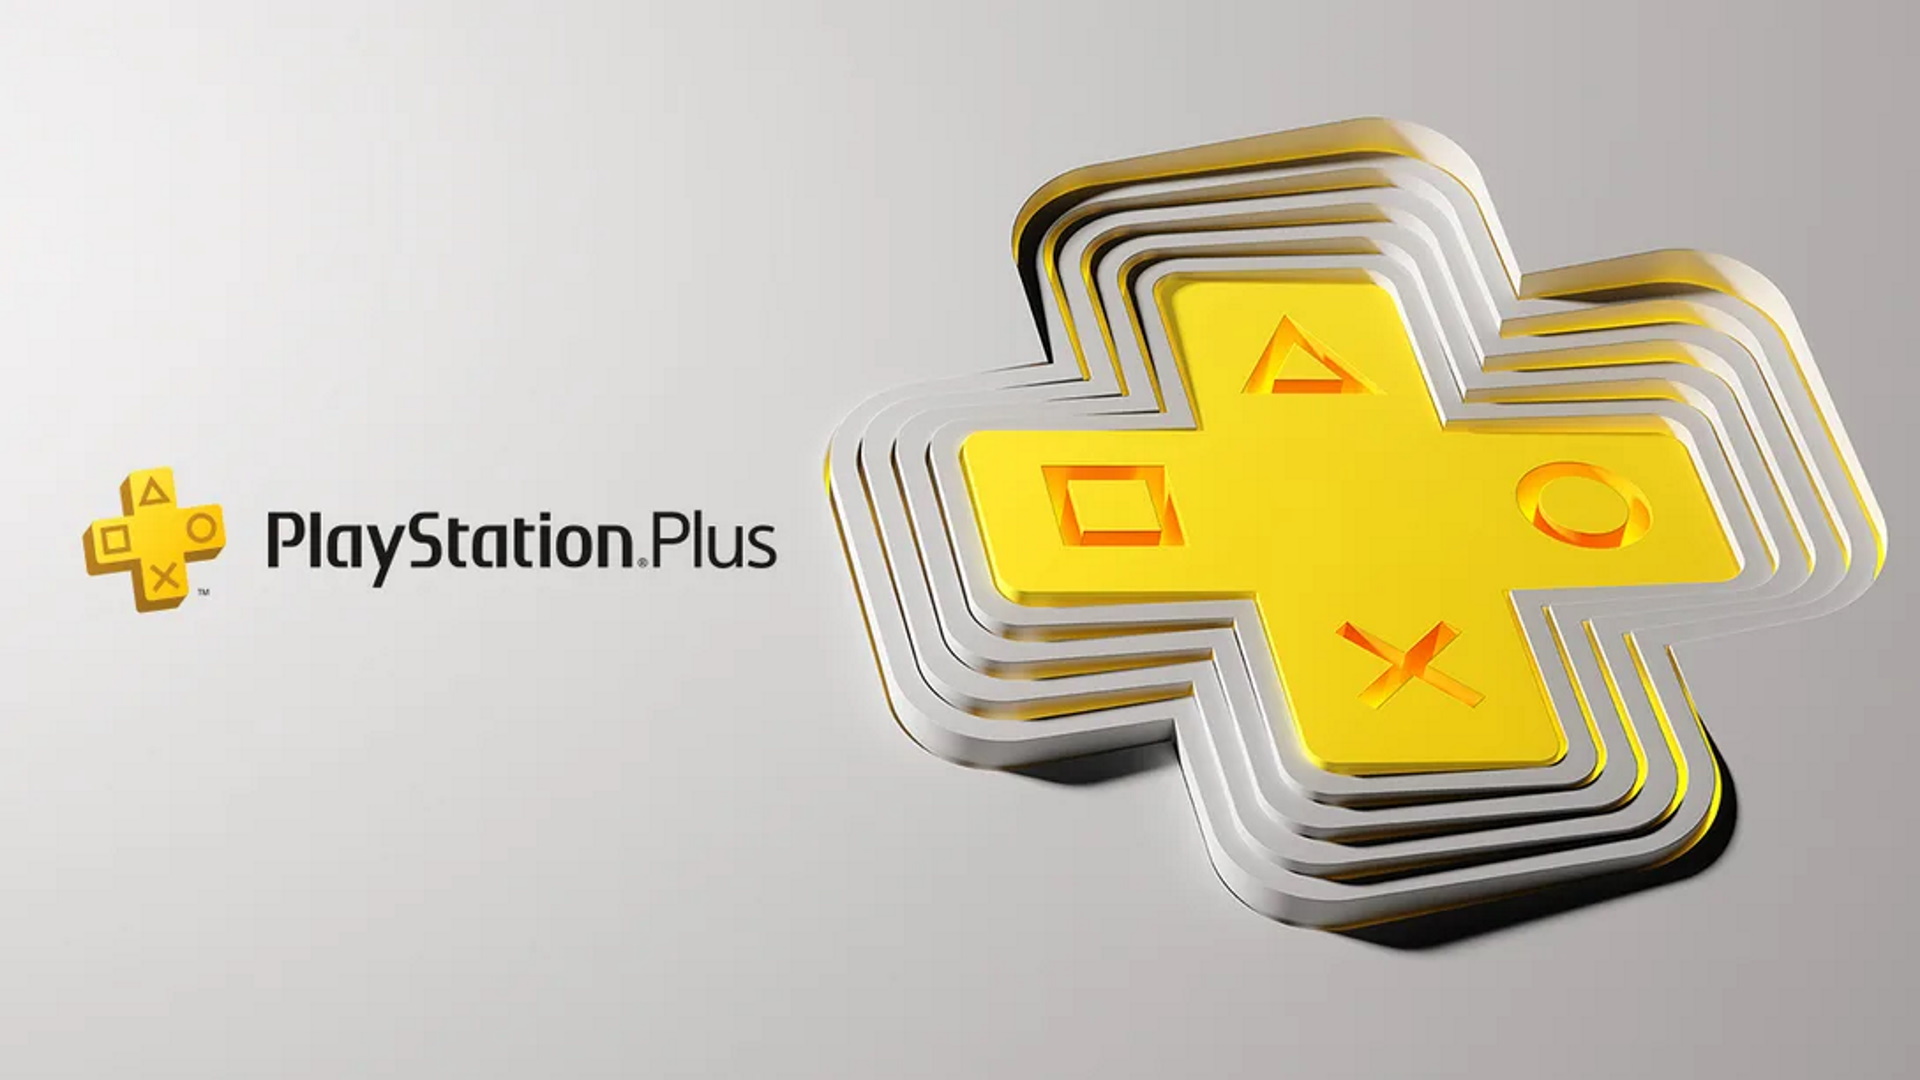 Large PlayStation Plus logo